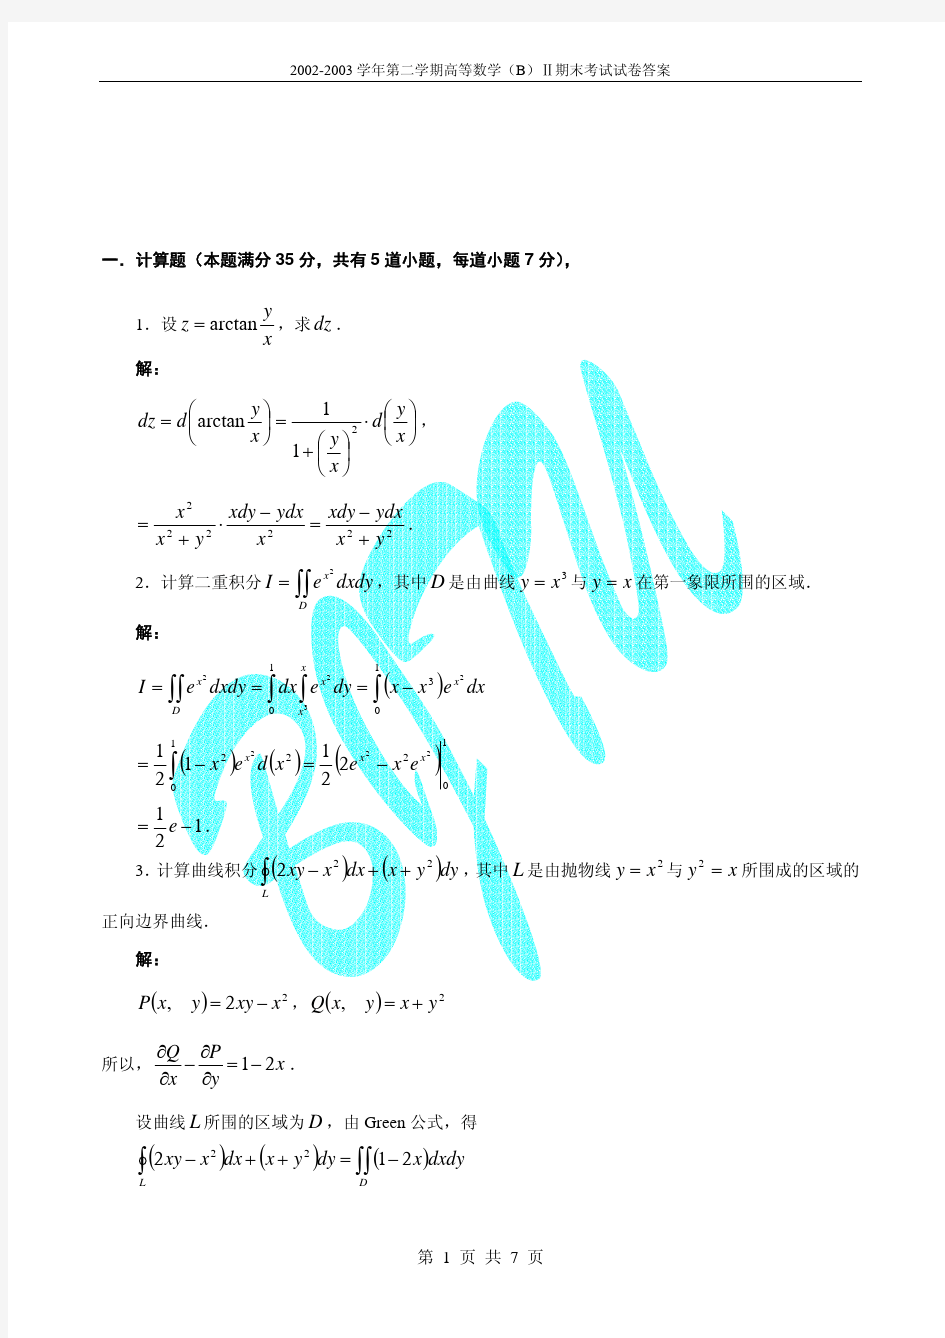 北京交通大学第二学期高等数学(B)Ⅱ期末考试试卷及其答案